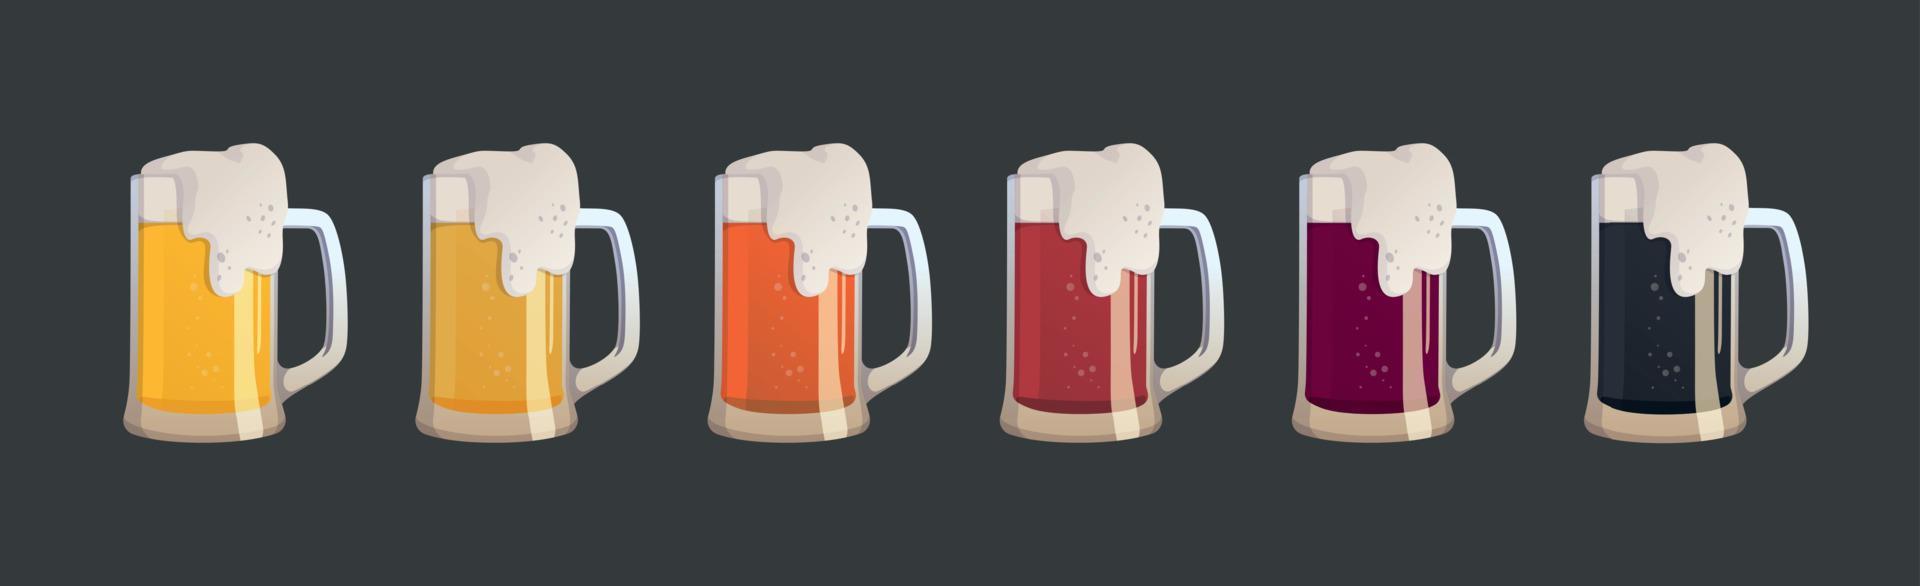 conjunto de 6 canecas de diferentes tipos de cerveja - vetor